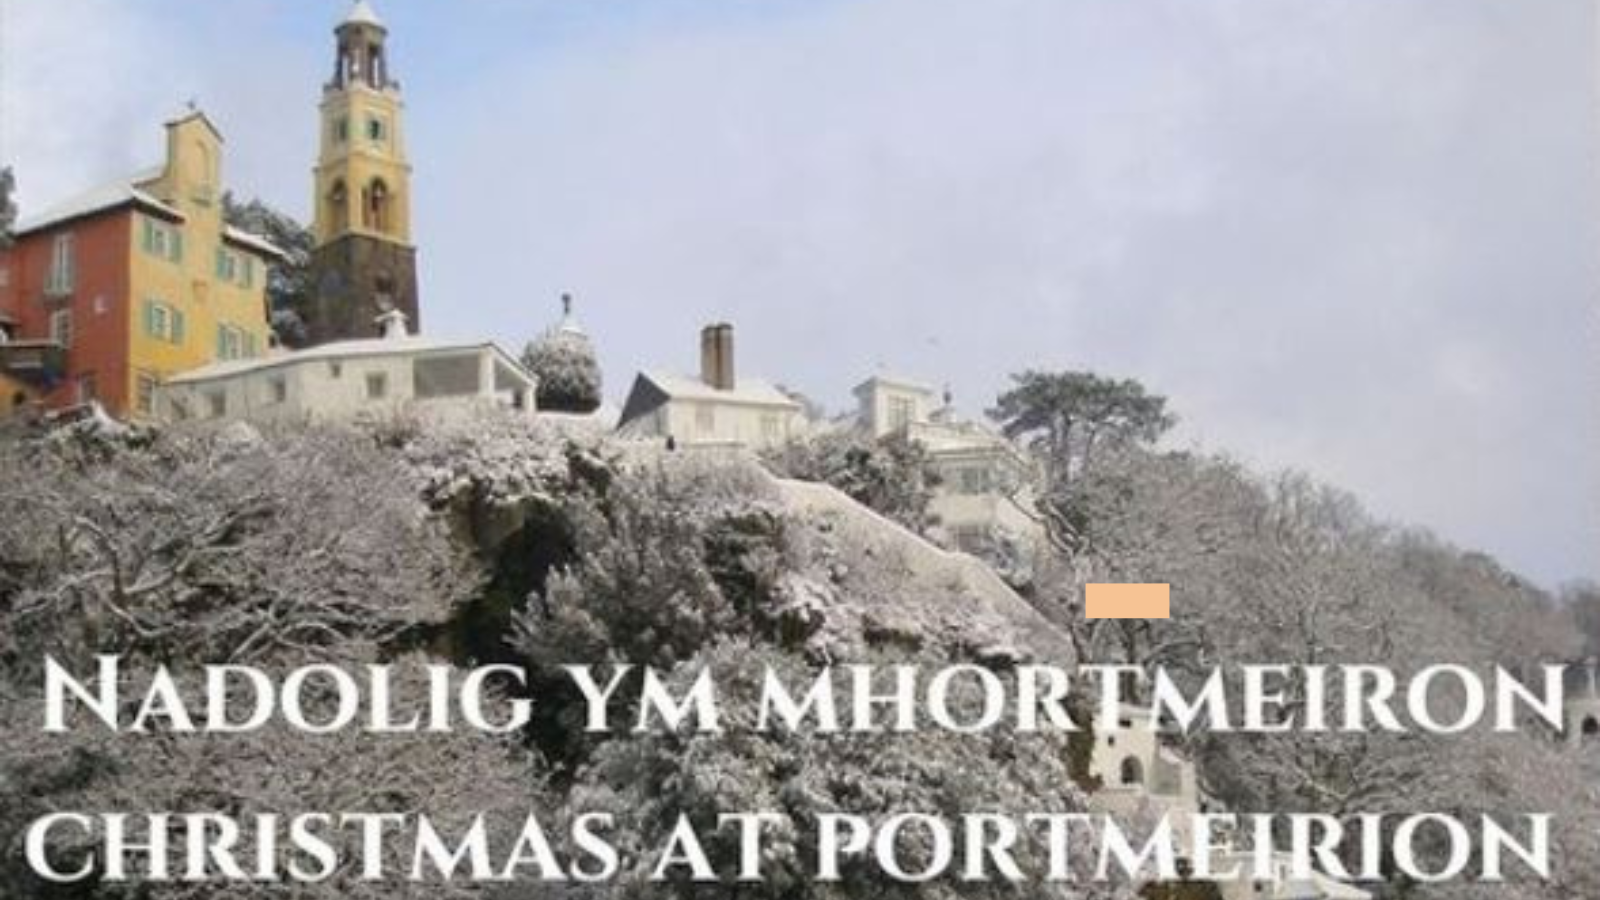 Christmas at Portmeirion